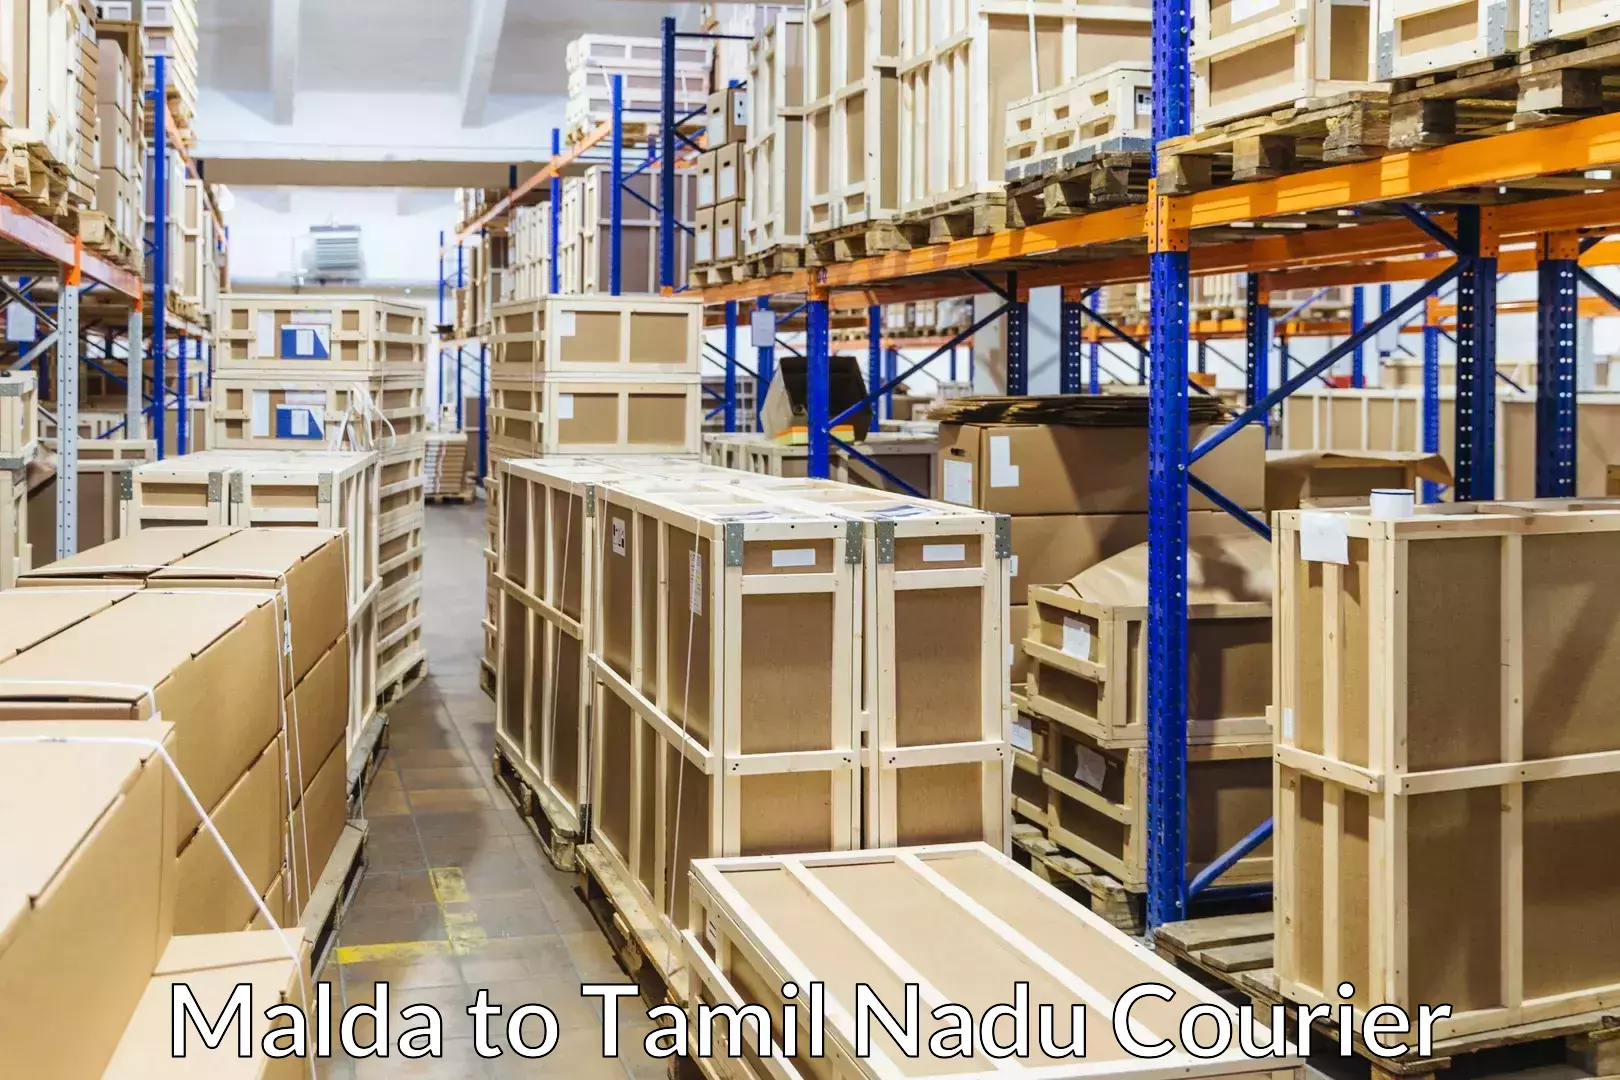 Furniture transport professionals Malda to Tamil Nadu